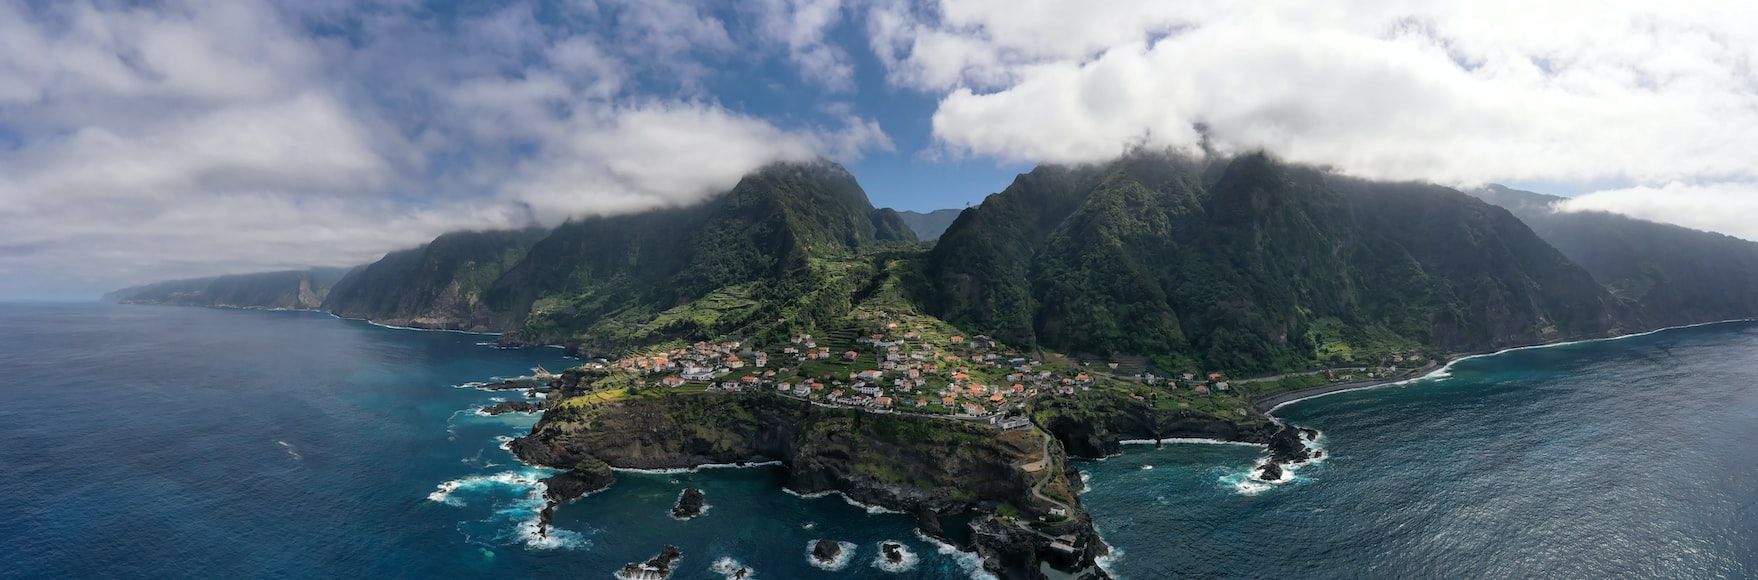 Una piccola area abitata in mezzo alle montagne verdi a Madeira